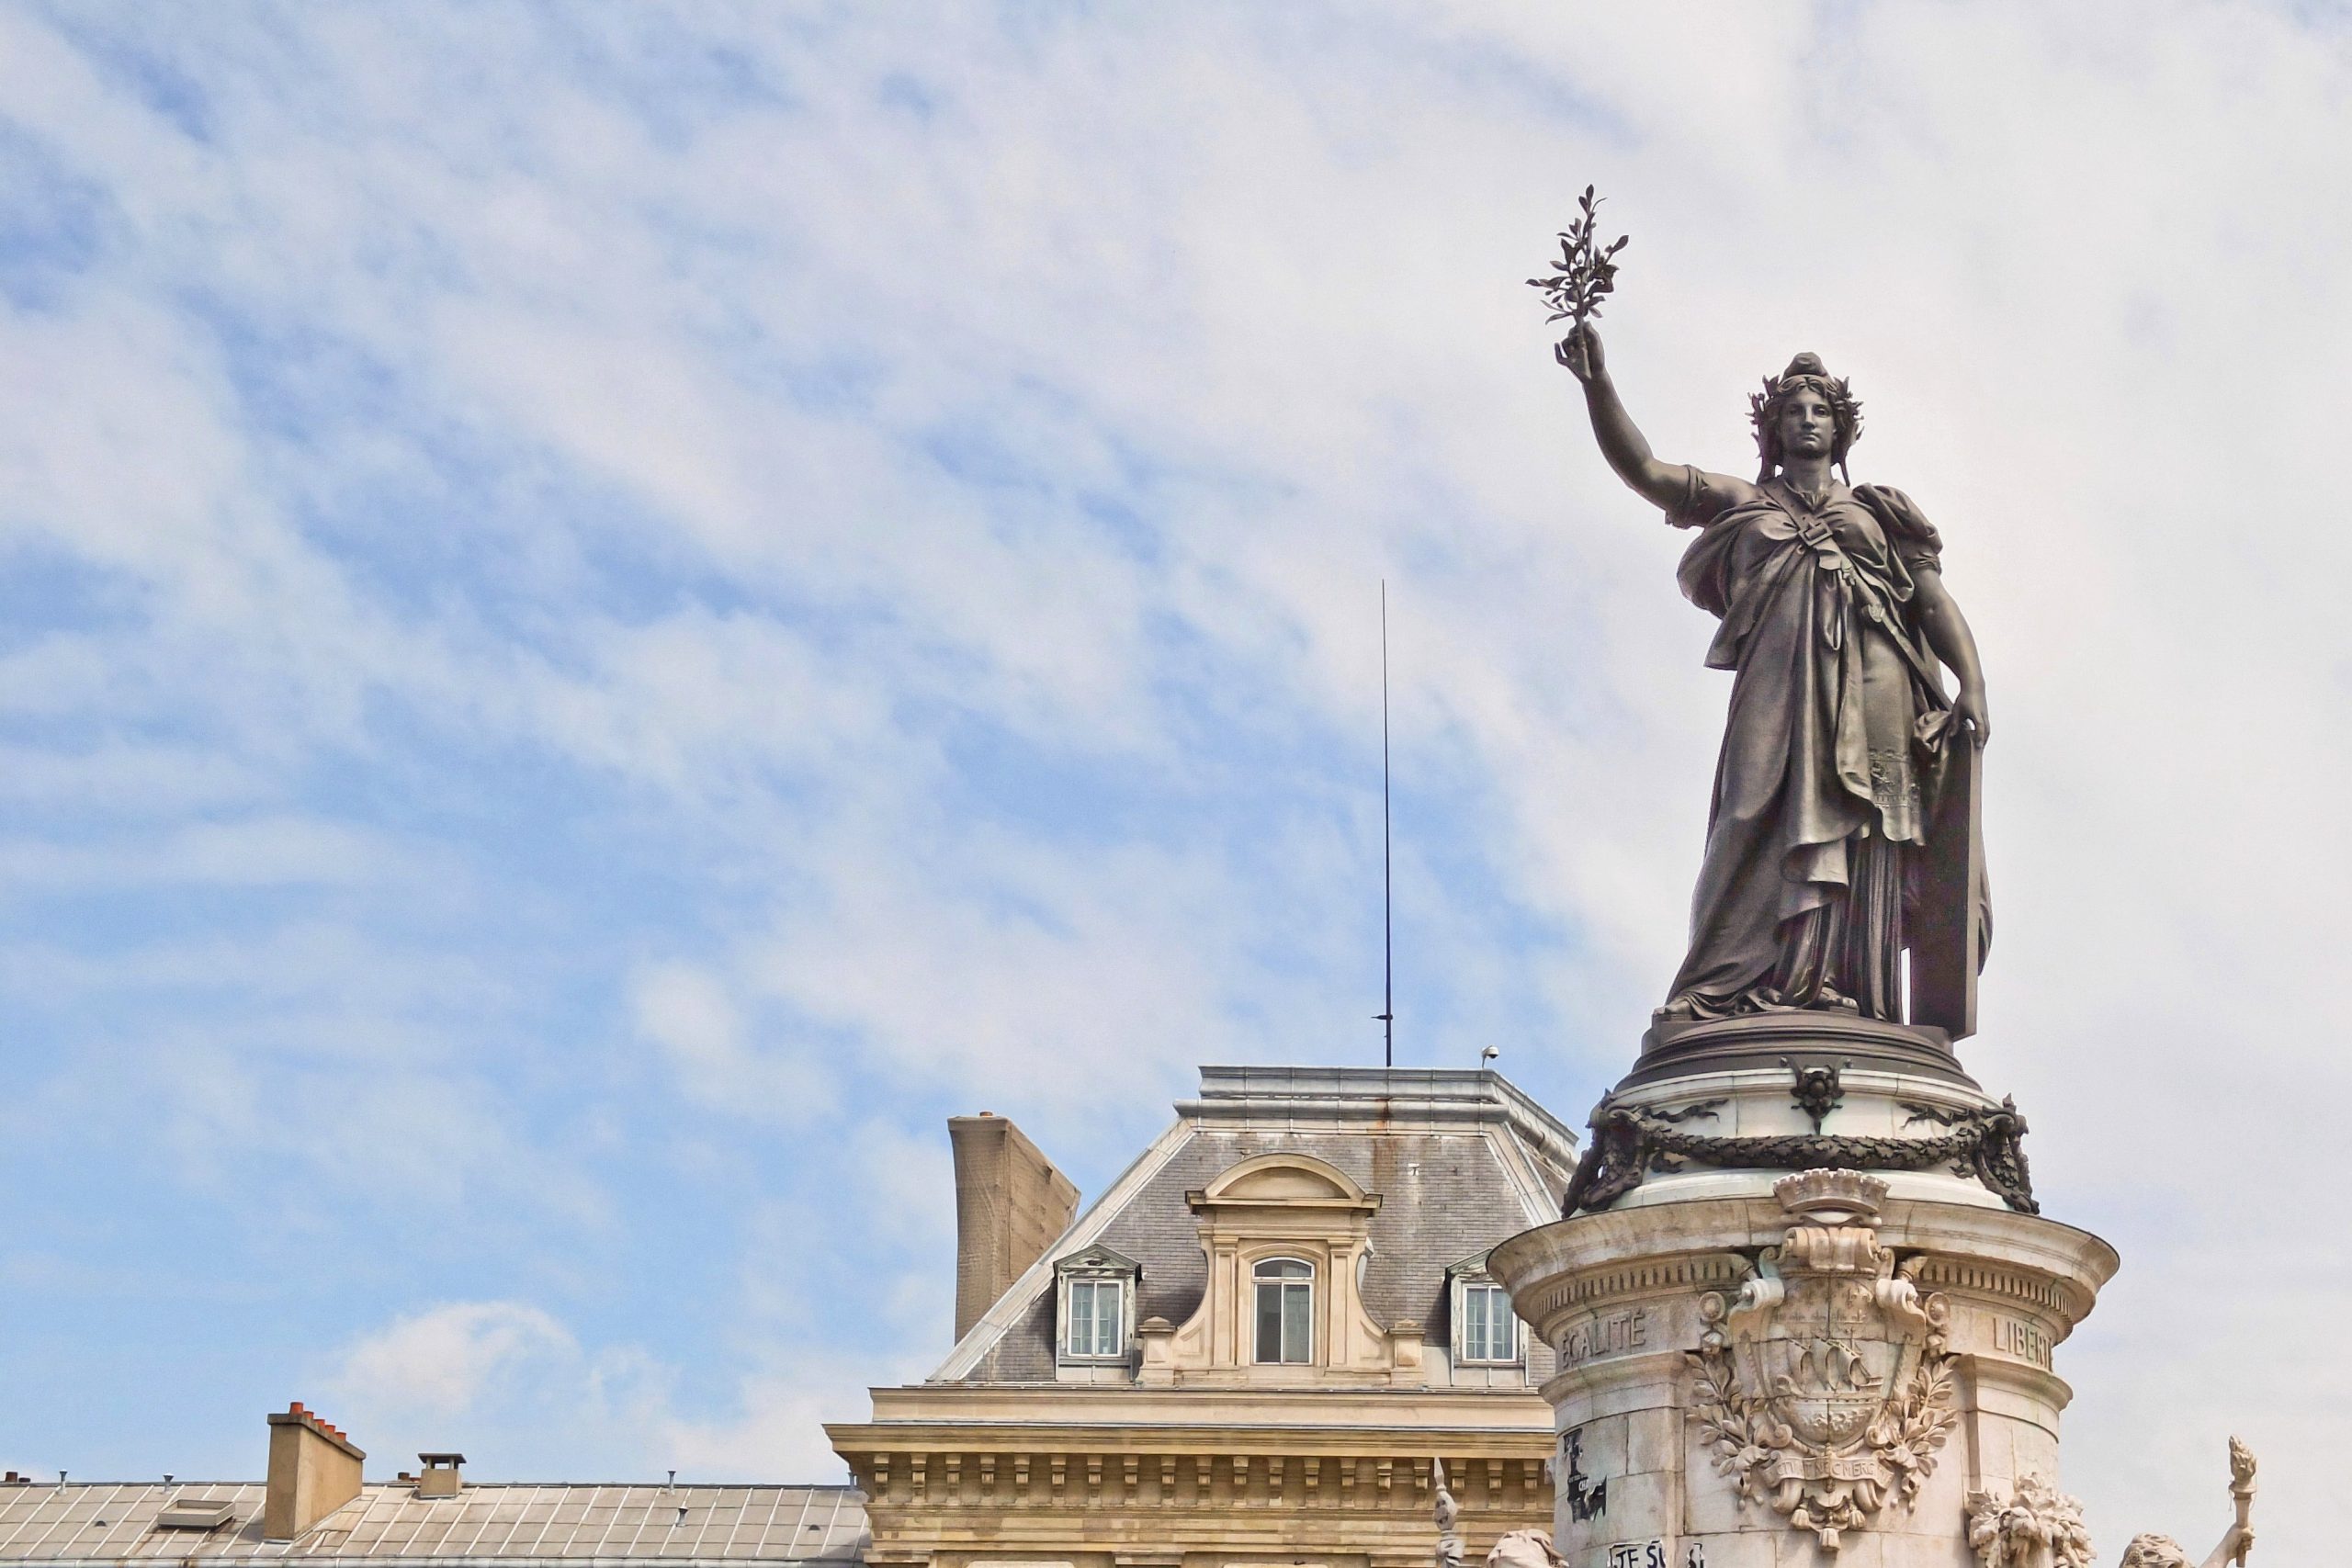 玛丽安娜是法国的国家象征，她的形象遍布法国各地，常被放置在市政厅或法院显著位置。